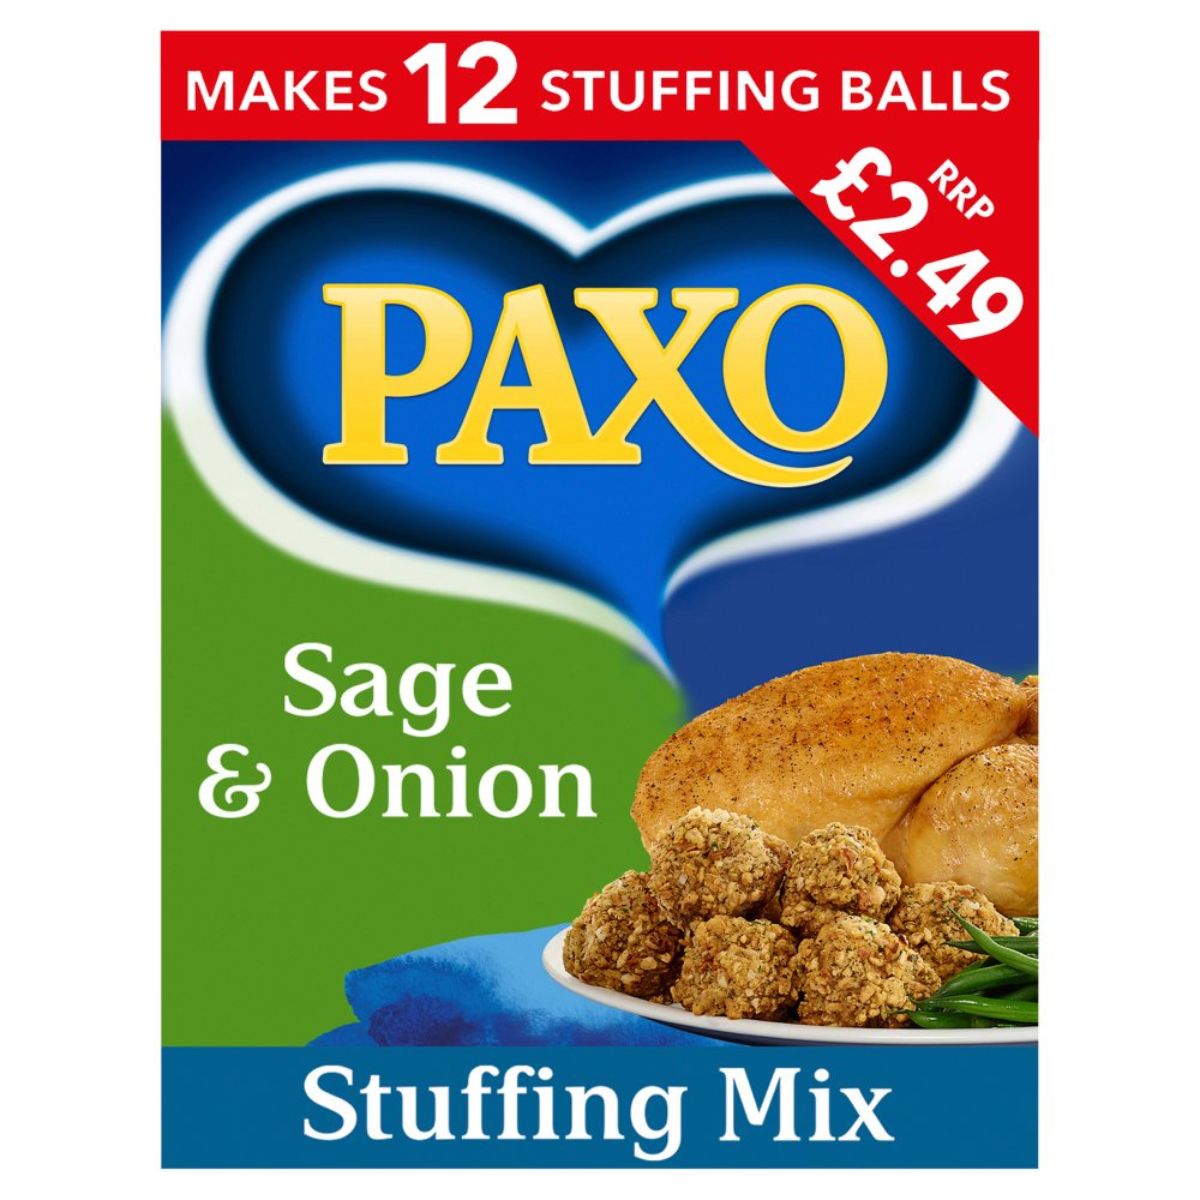 Paxo - Sage & Onion Stuffing Mix - 170g.